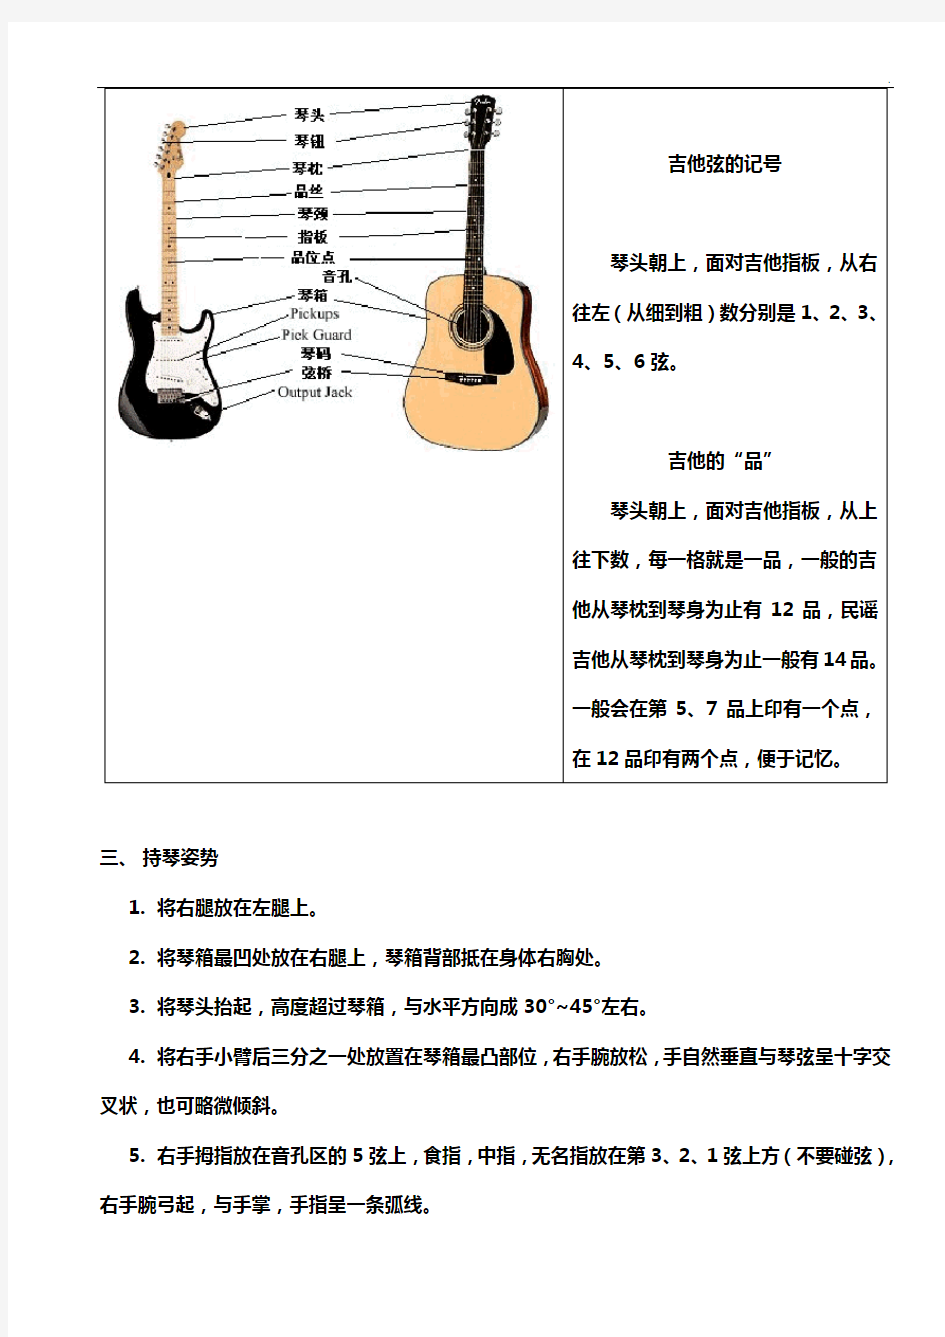 吉他基础学习与各调音阶图详解